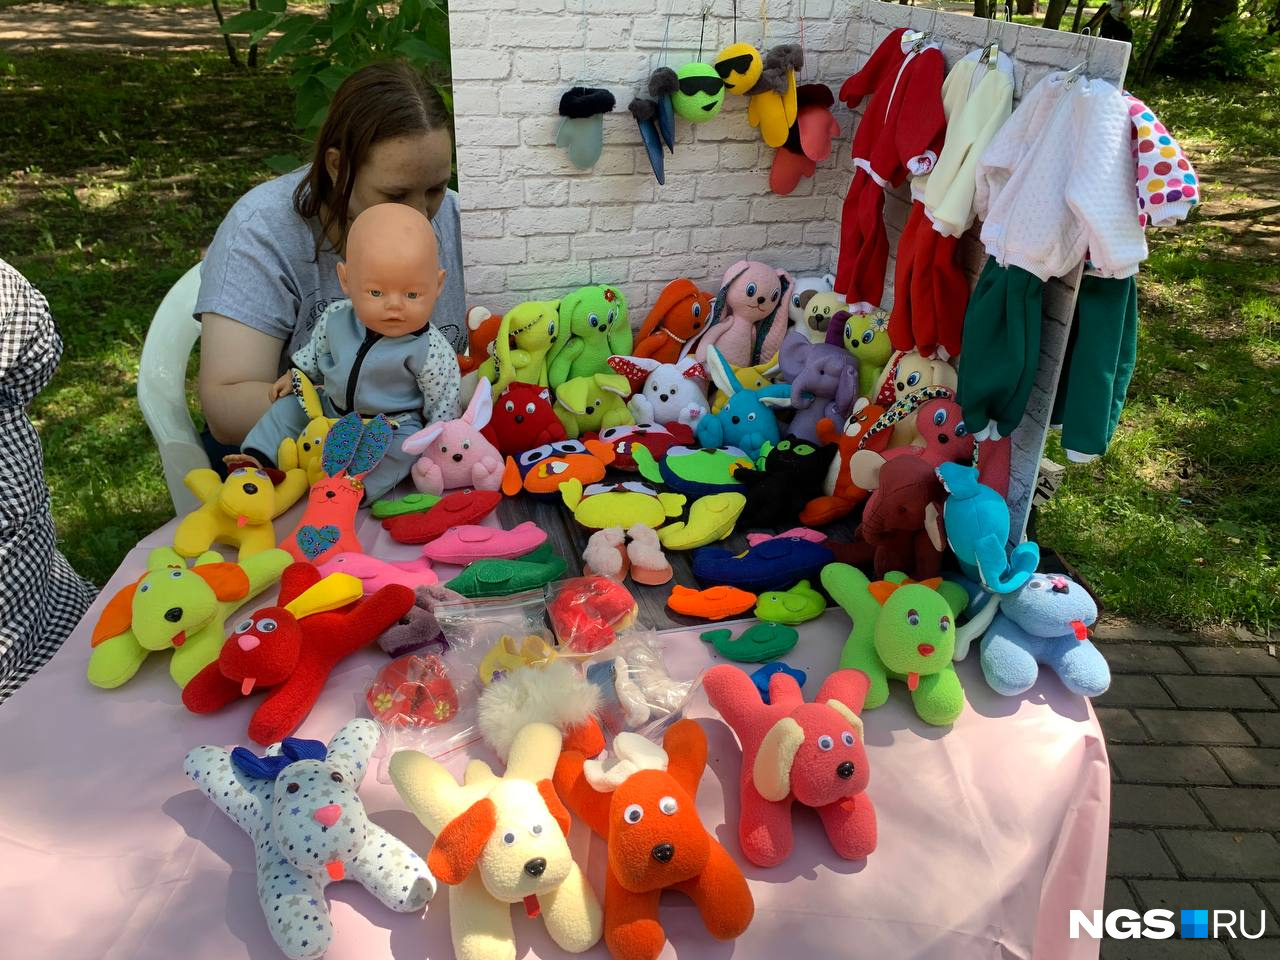 Ларьки в основном от организаций. Здесь продаются игрушки (цена — от 40 до 200 рублей), которые сделали дети кружка «Маленькая мама»